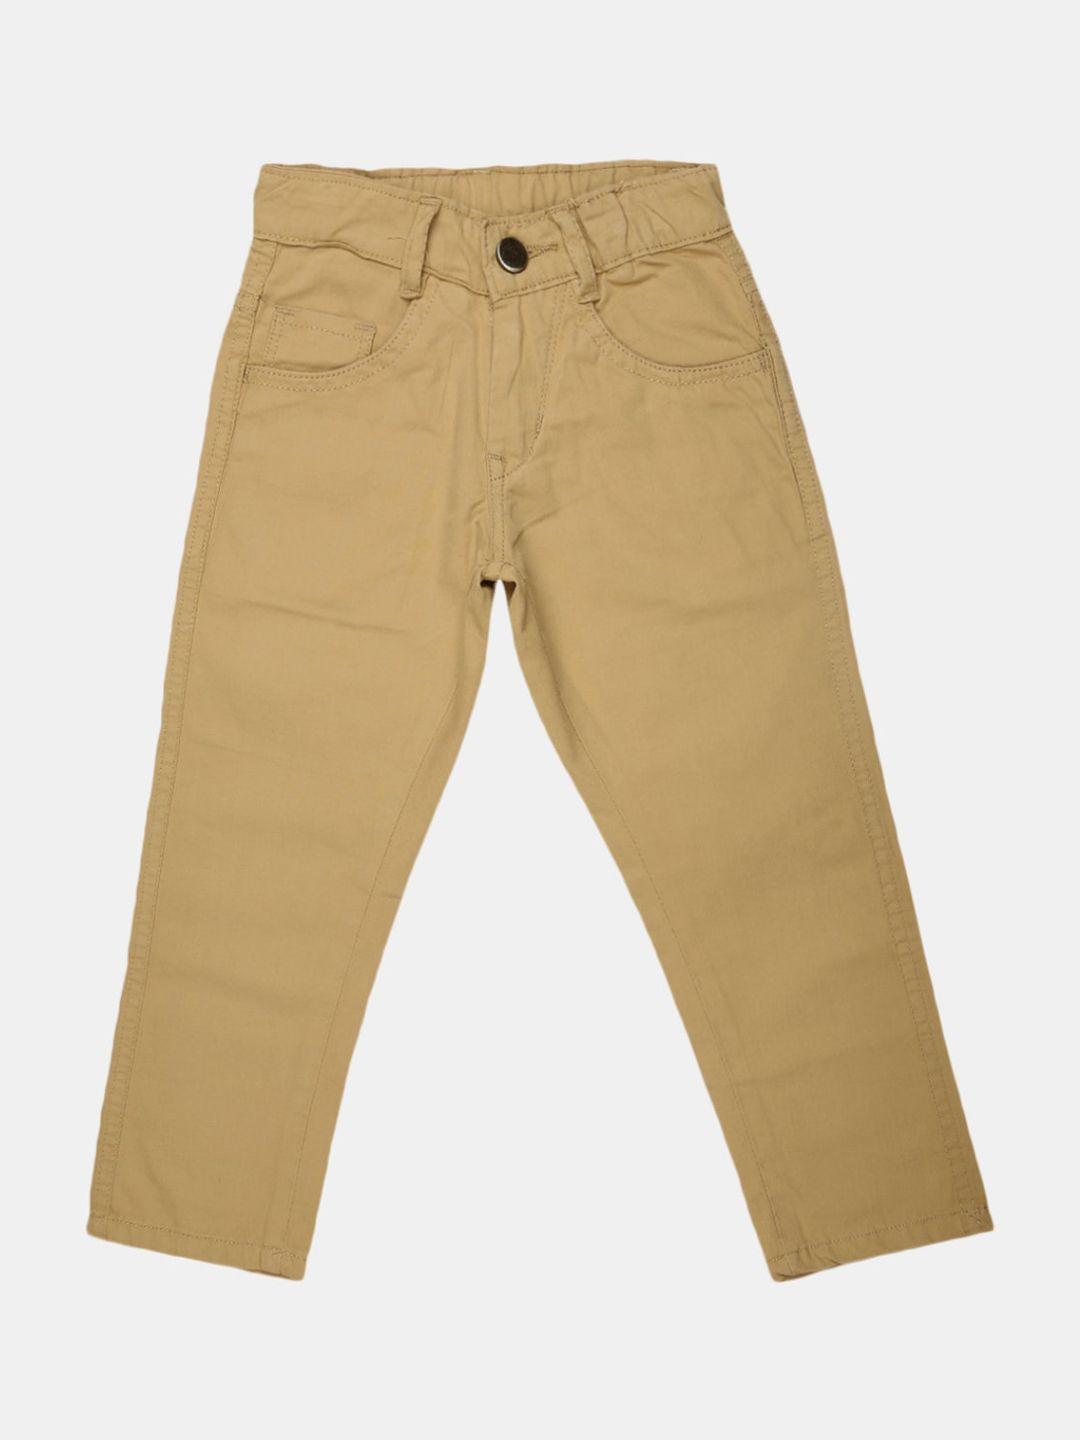 v-mart boys beige solid easy wash regular fit cotton trouser